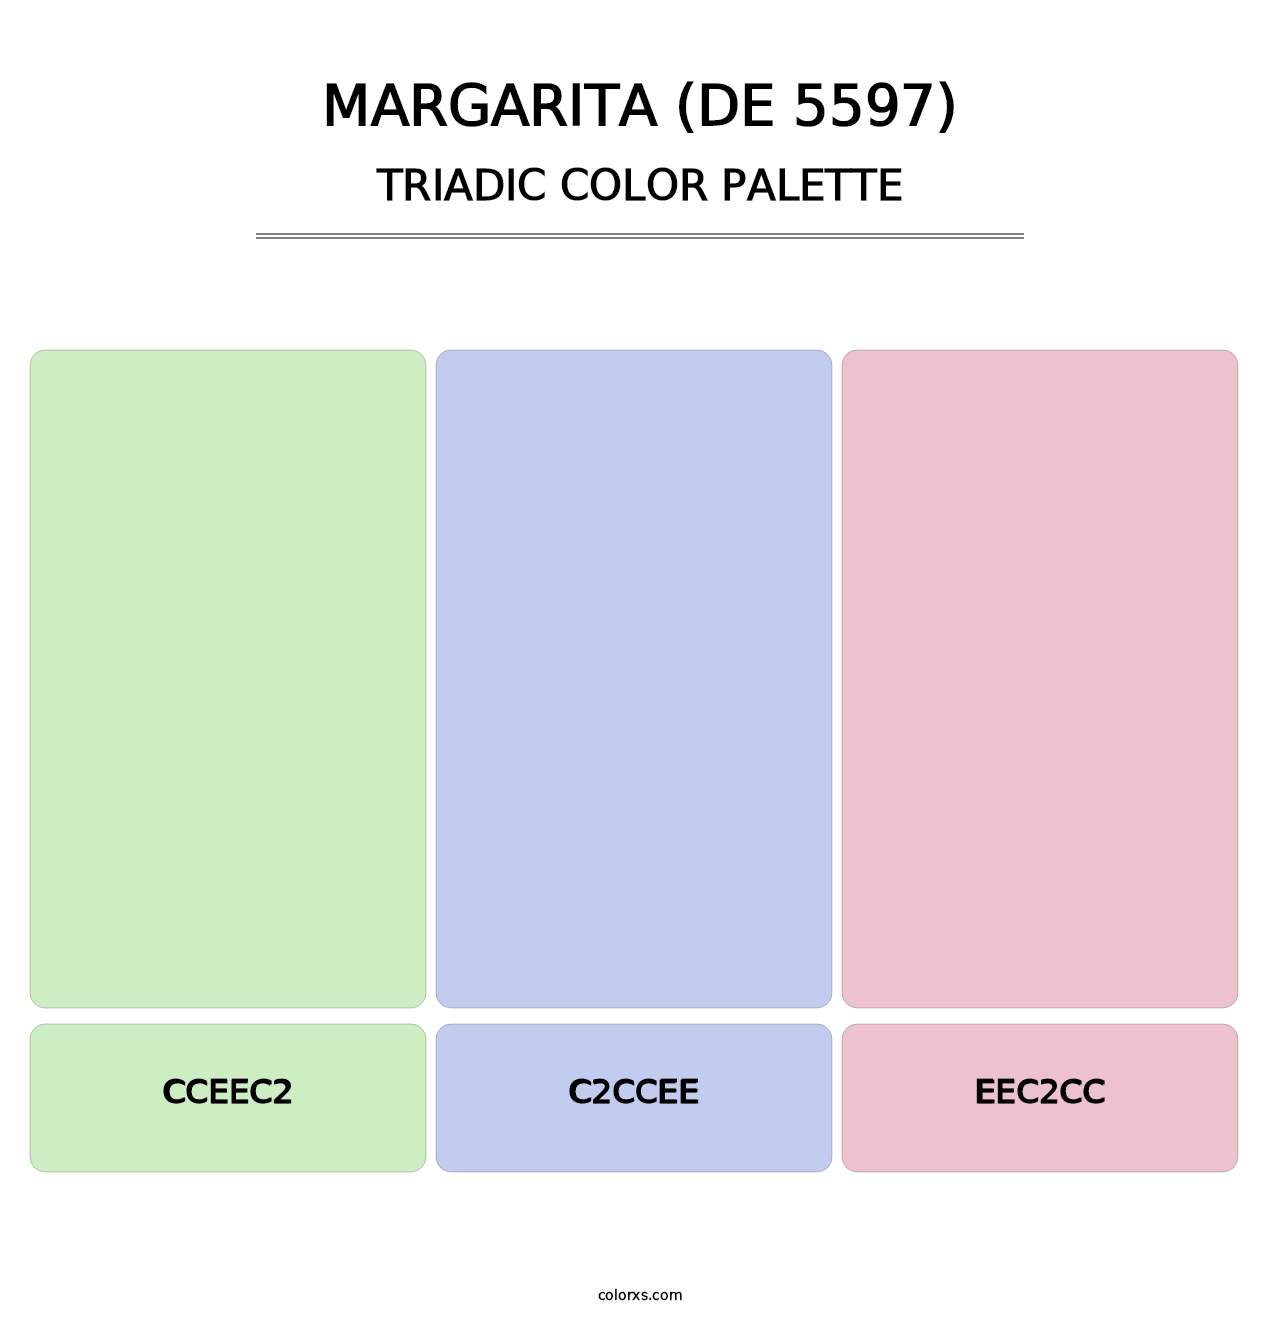 Margarita (DE 5597) - Triadic Color Palette